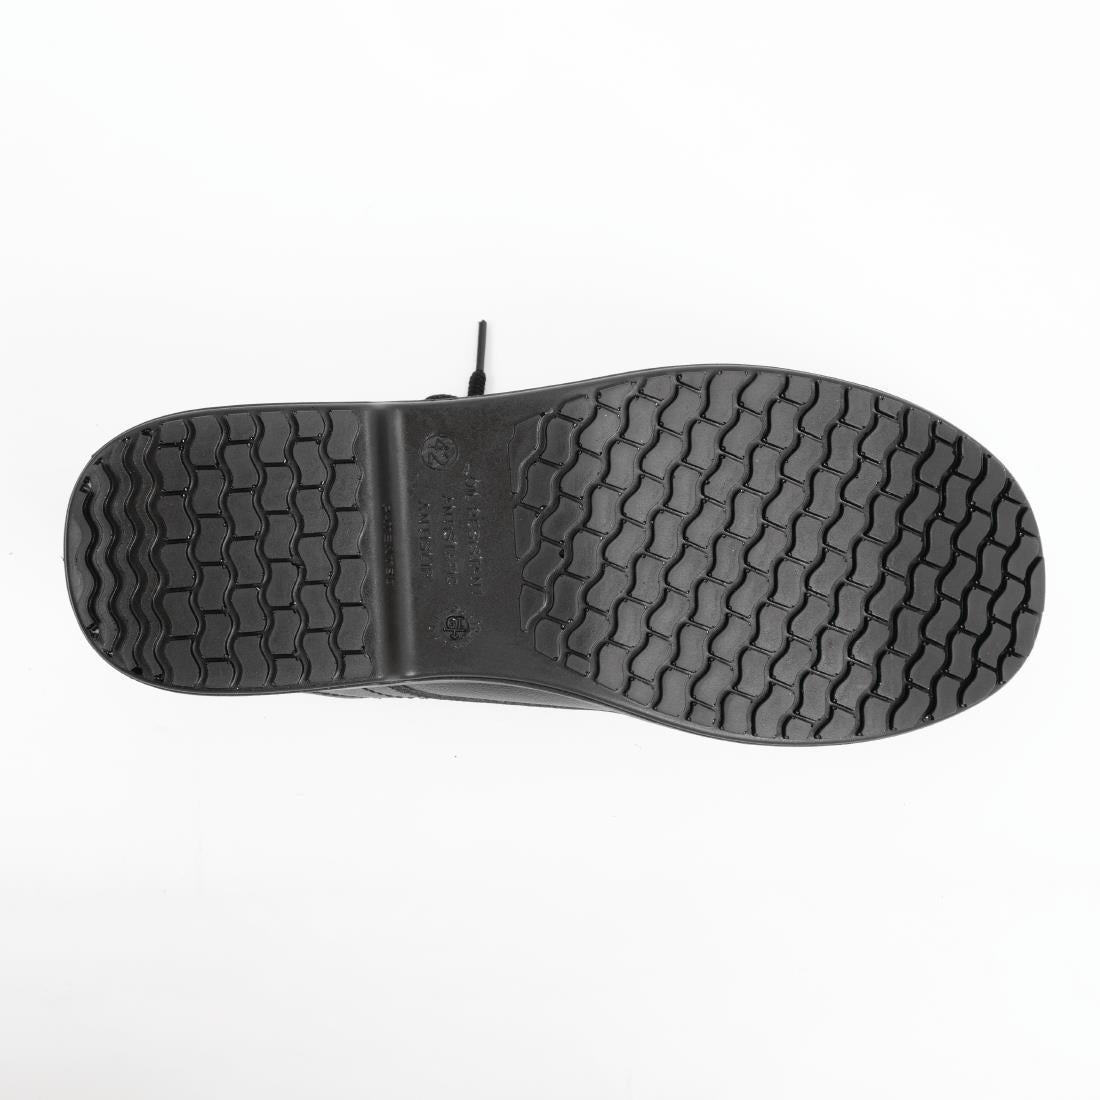 BB497-36 Slipbuster Basic Safety Shoe Toe Cap